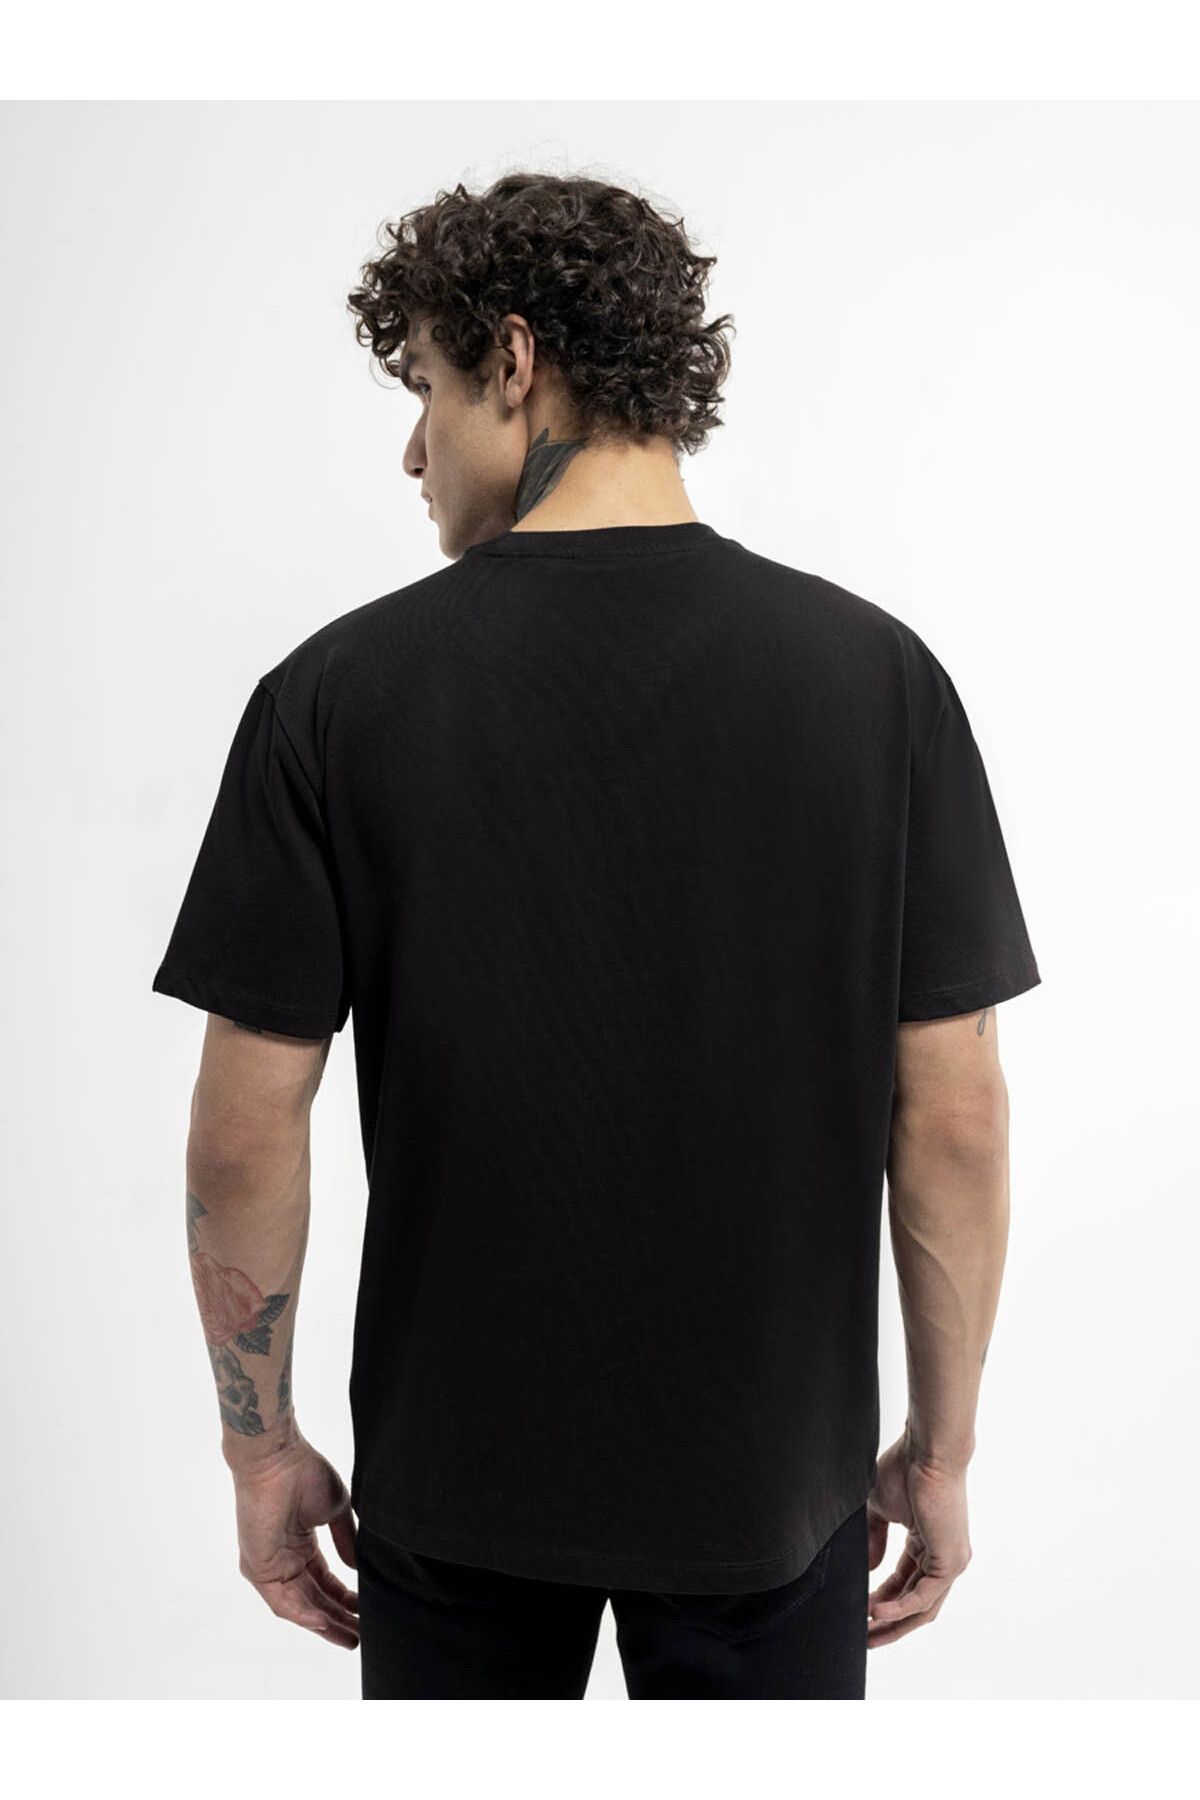 Loft تی شرت مردانه سیاه LF2036407